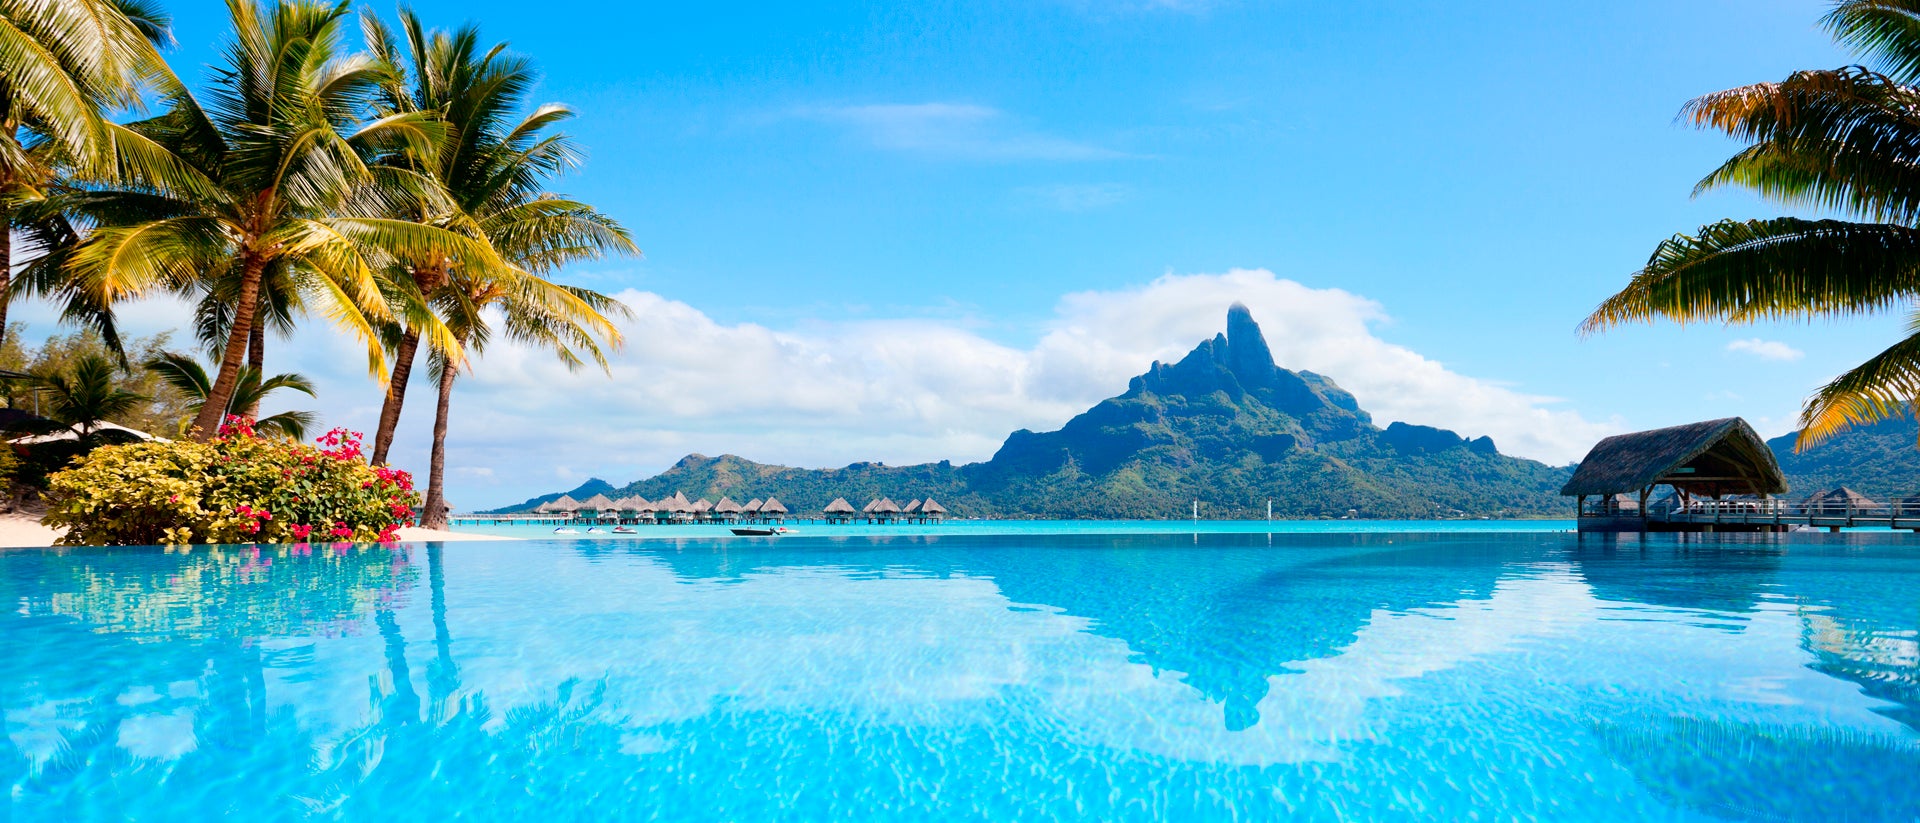 Magnifico paesaggio di Tahiti con capanna sulle acque cristalline e un'isola verde